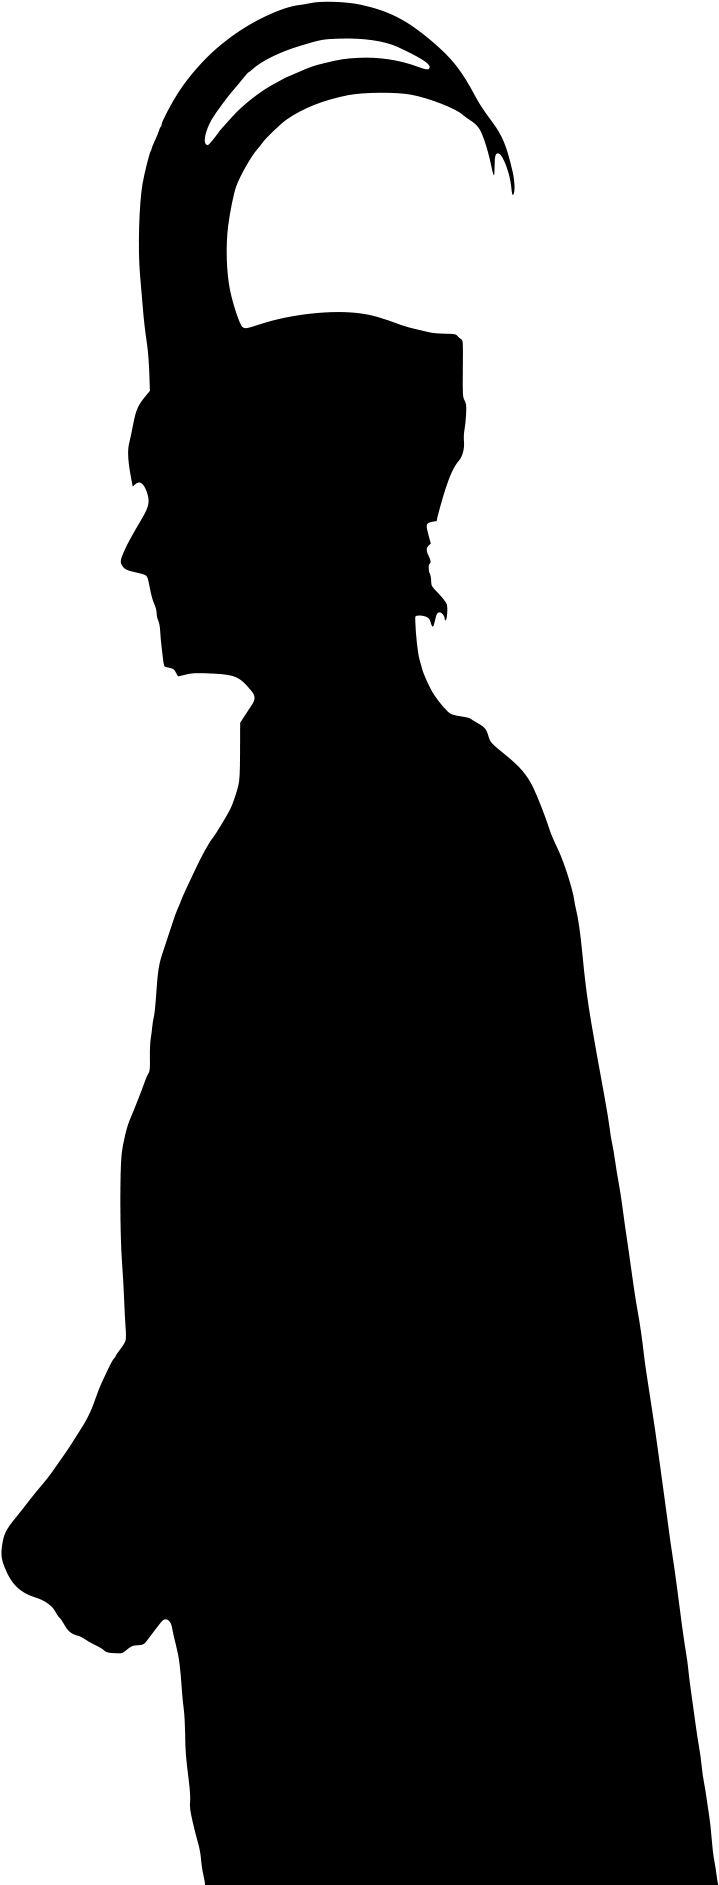 Loki&vectorized Silhouette - Loki Silhouette (827x1910)